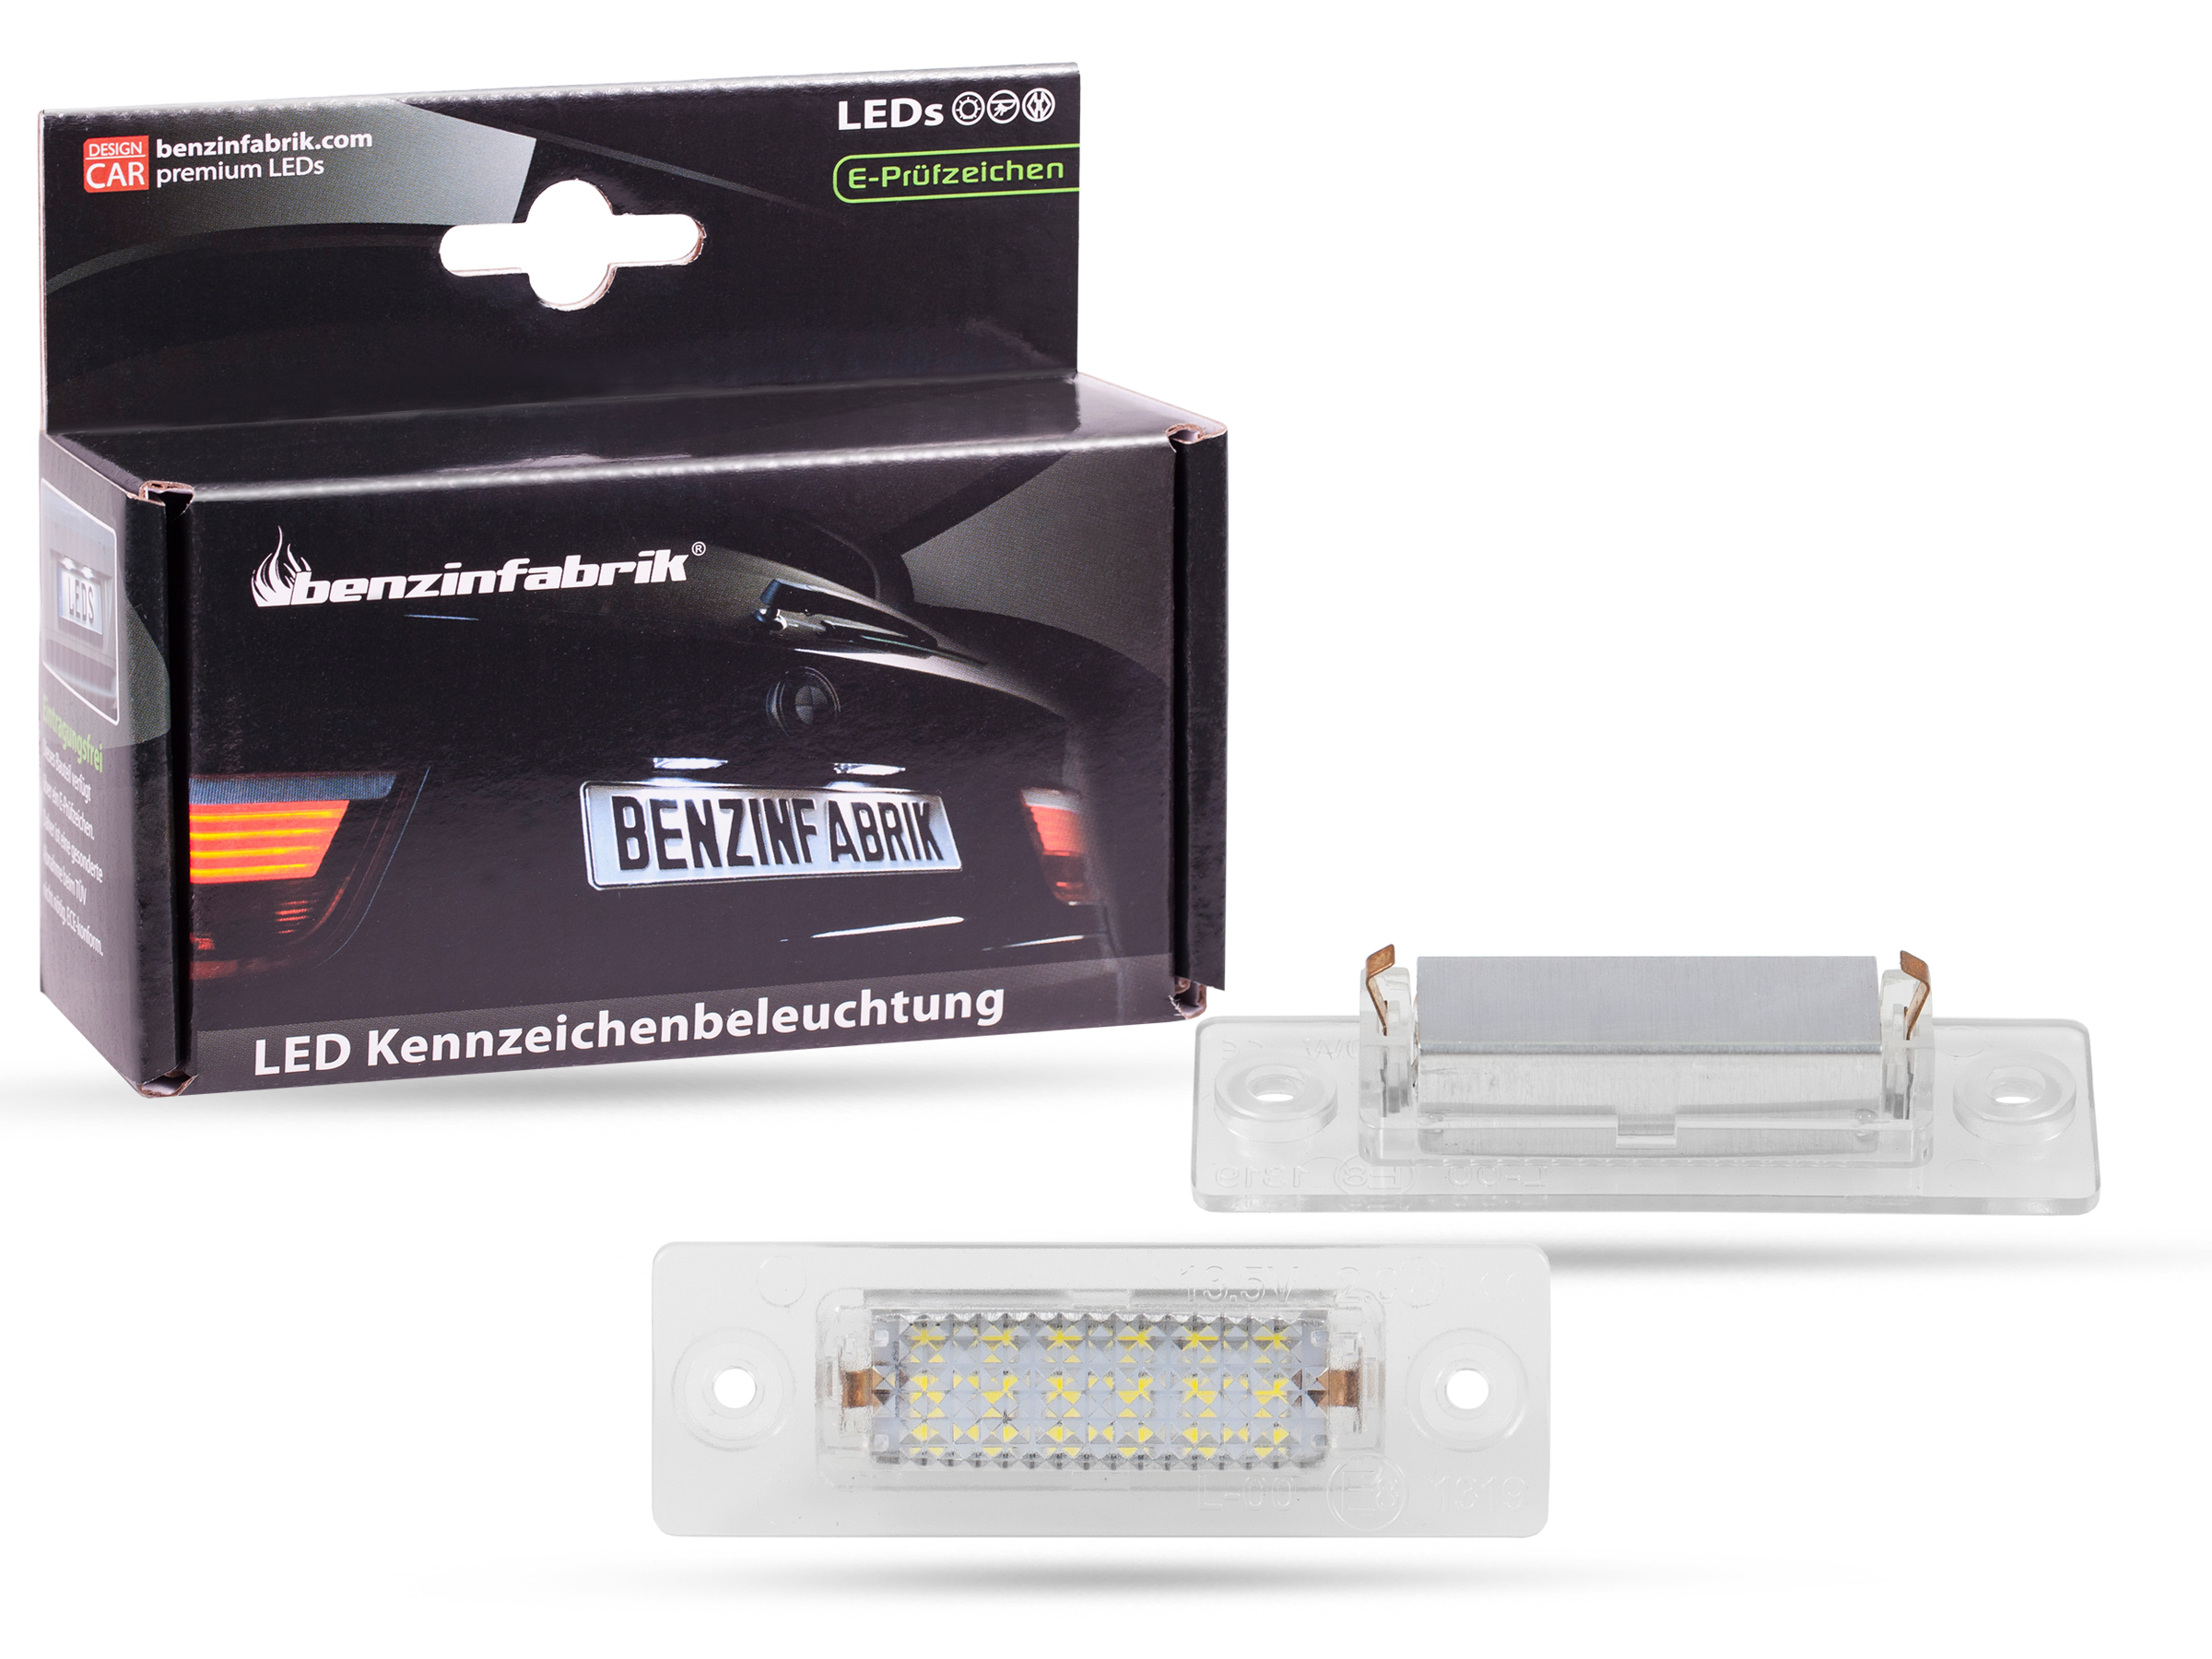 LED Kennzeichenbeleuchtung Module VW Caddy Bj.04-14, mit E